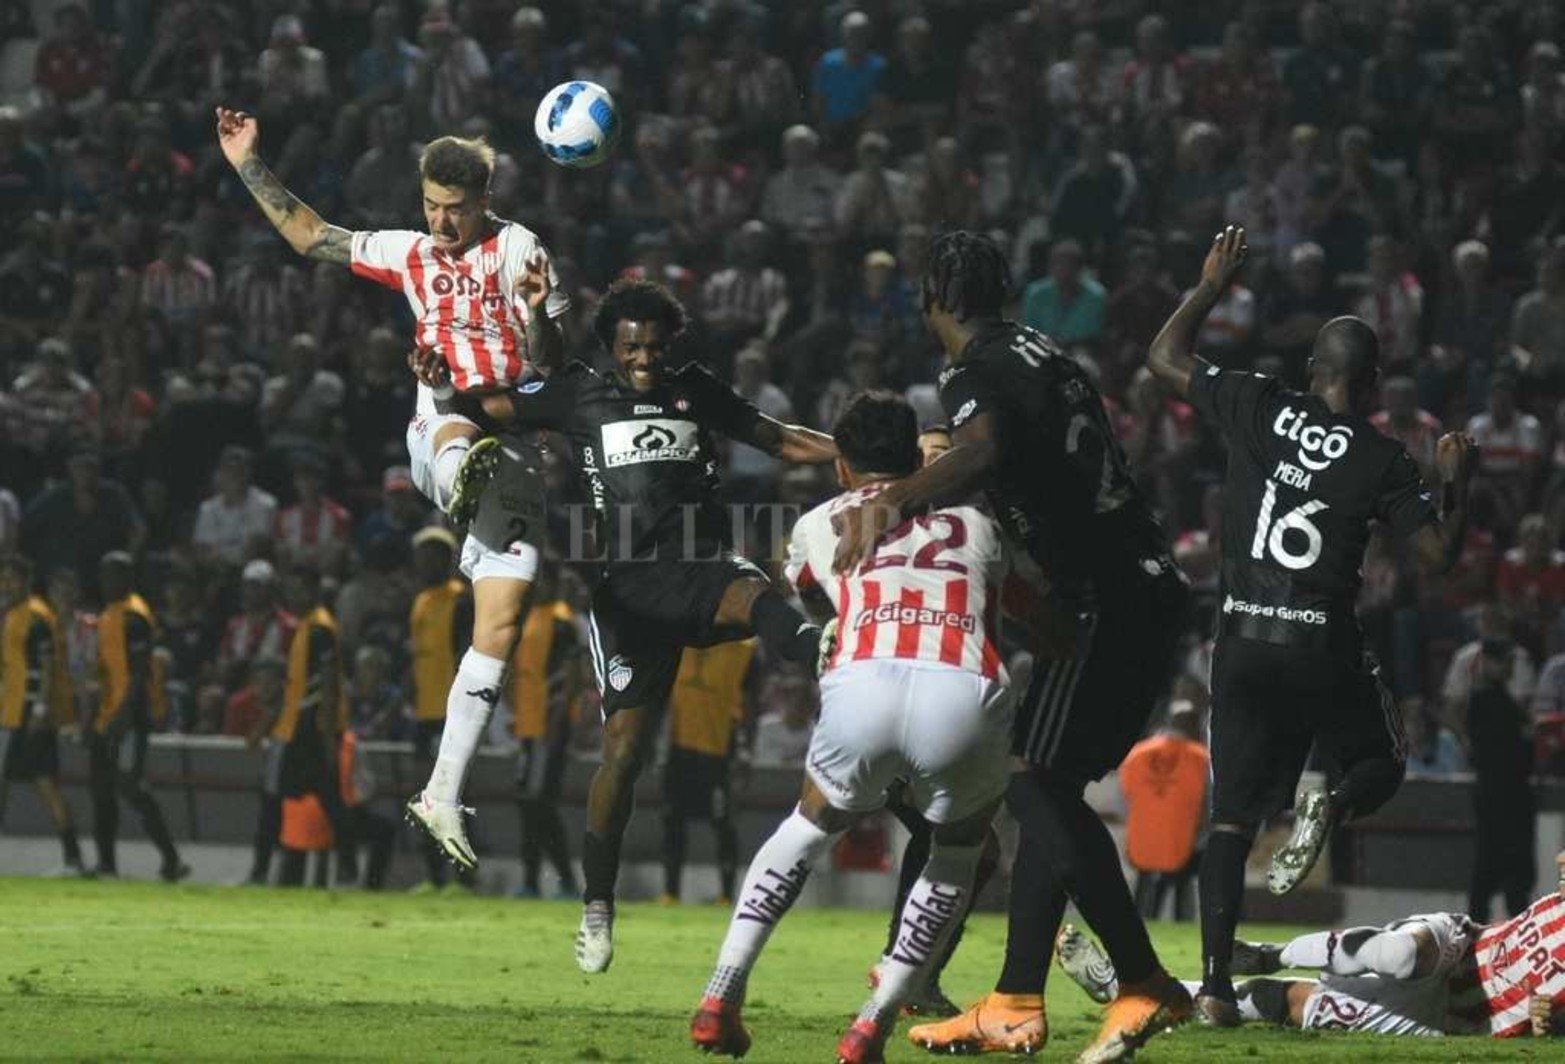 Copa Sudamericana Unión 1 - Junior de Barranquilla 1
Segundo tiempo.